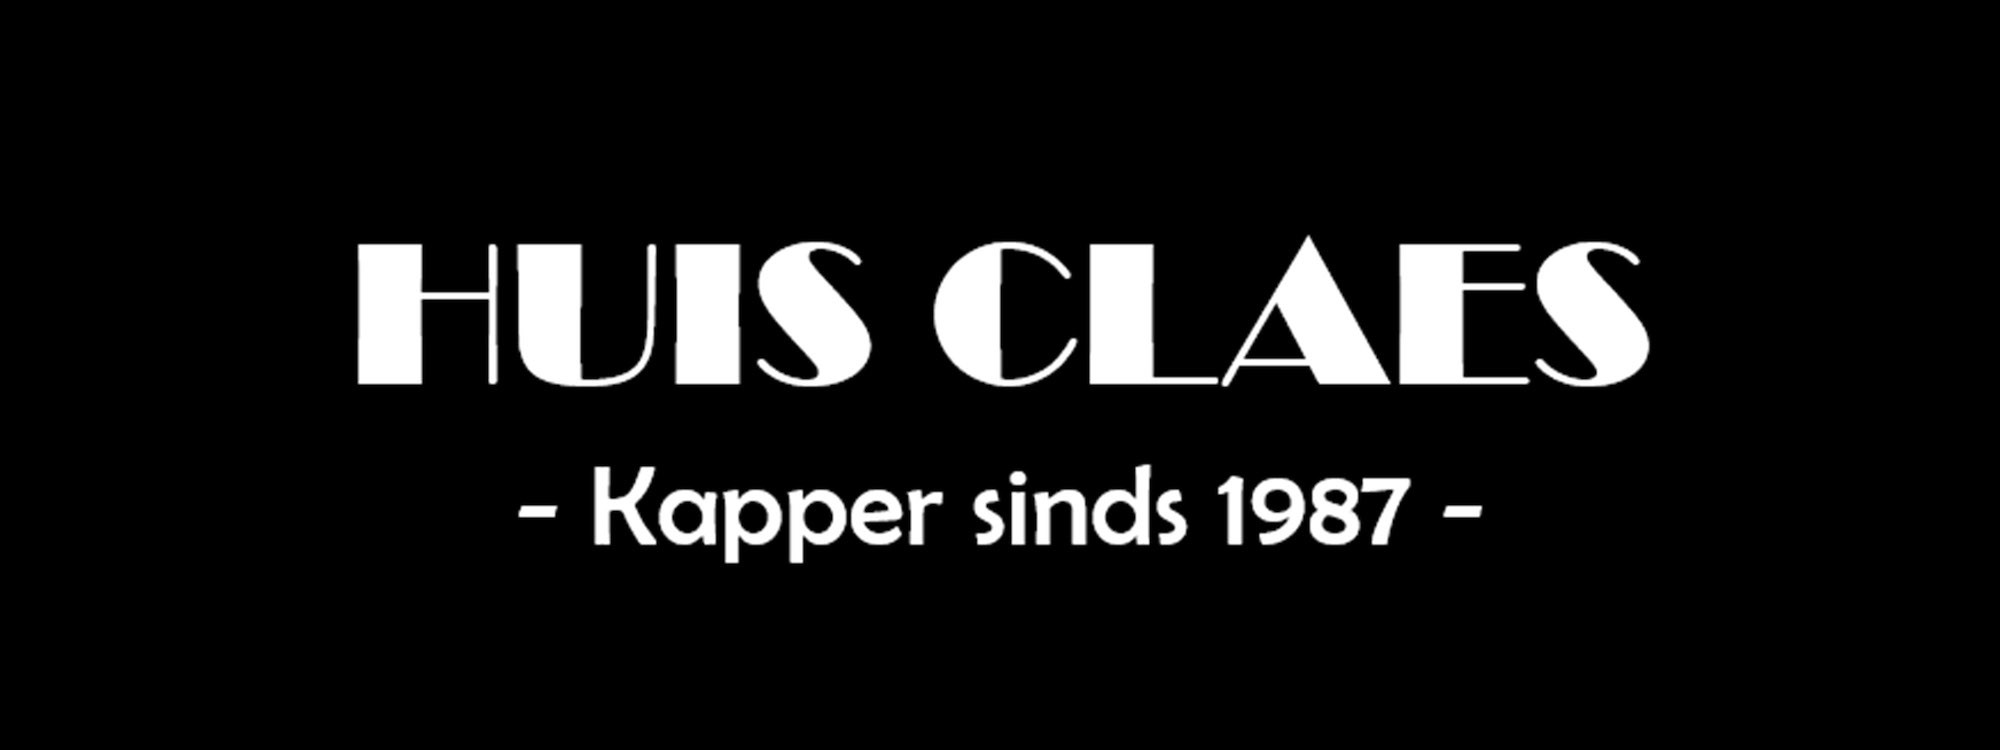 Header Kapsalon Huis Claes - Kapsalon Hoegaarden